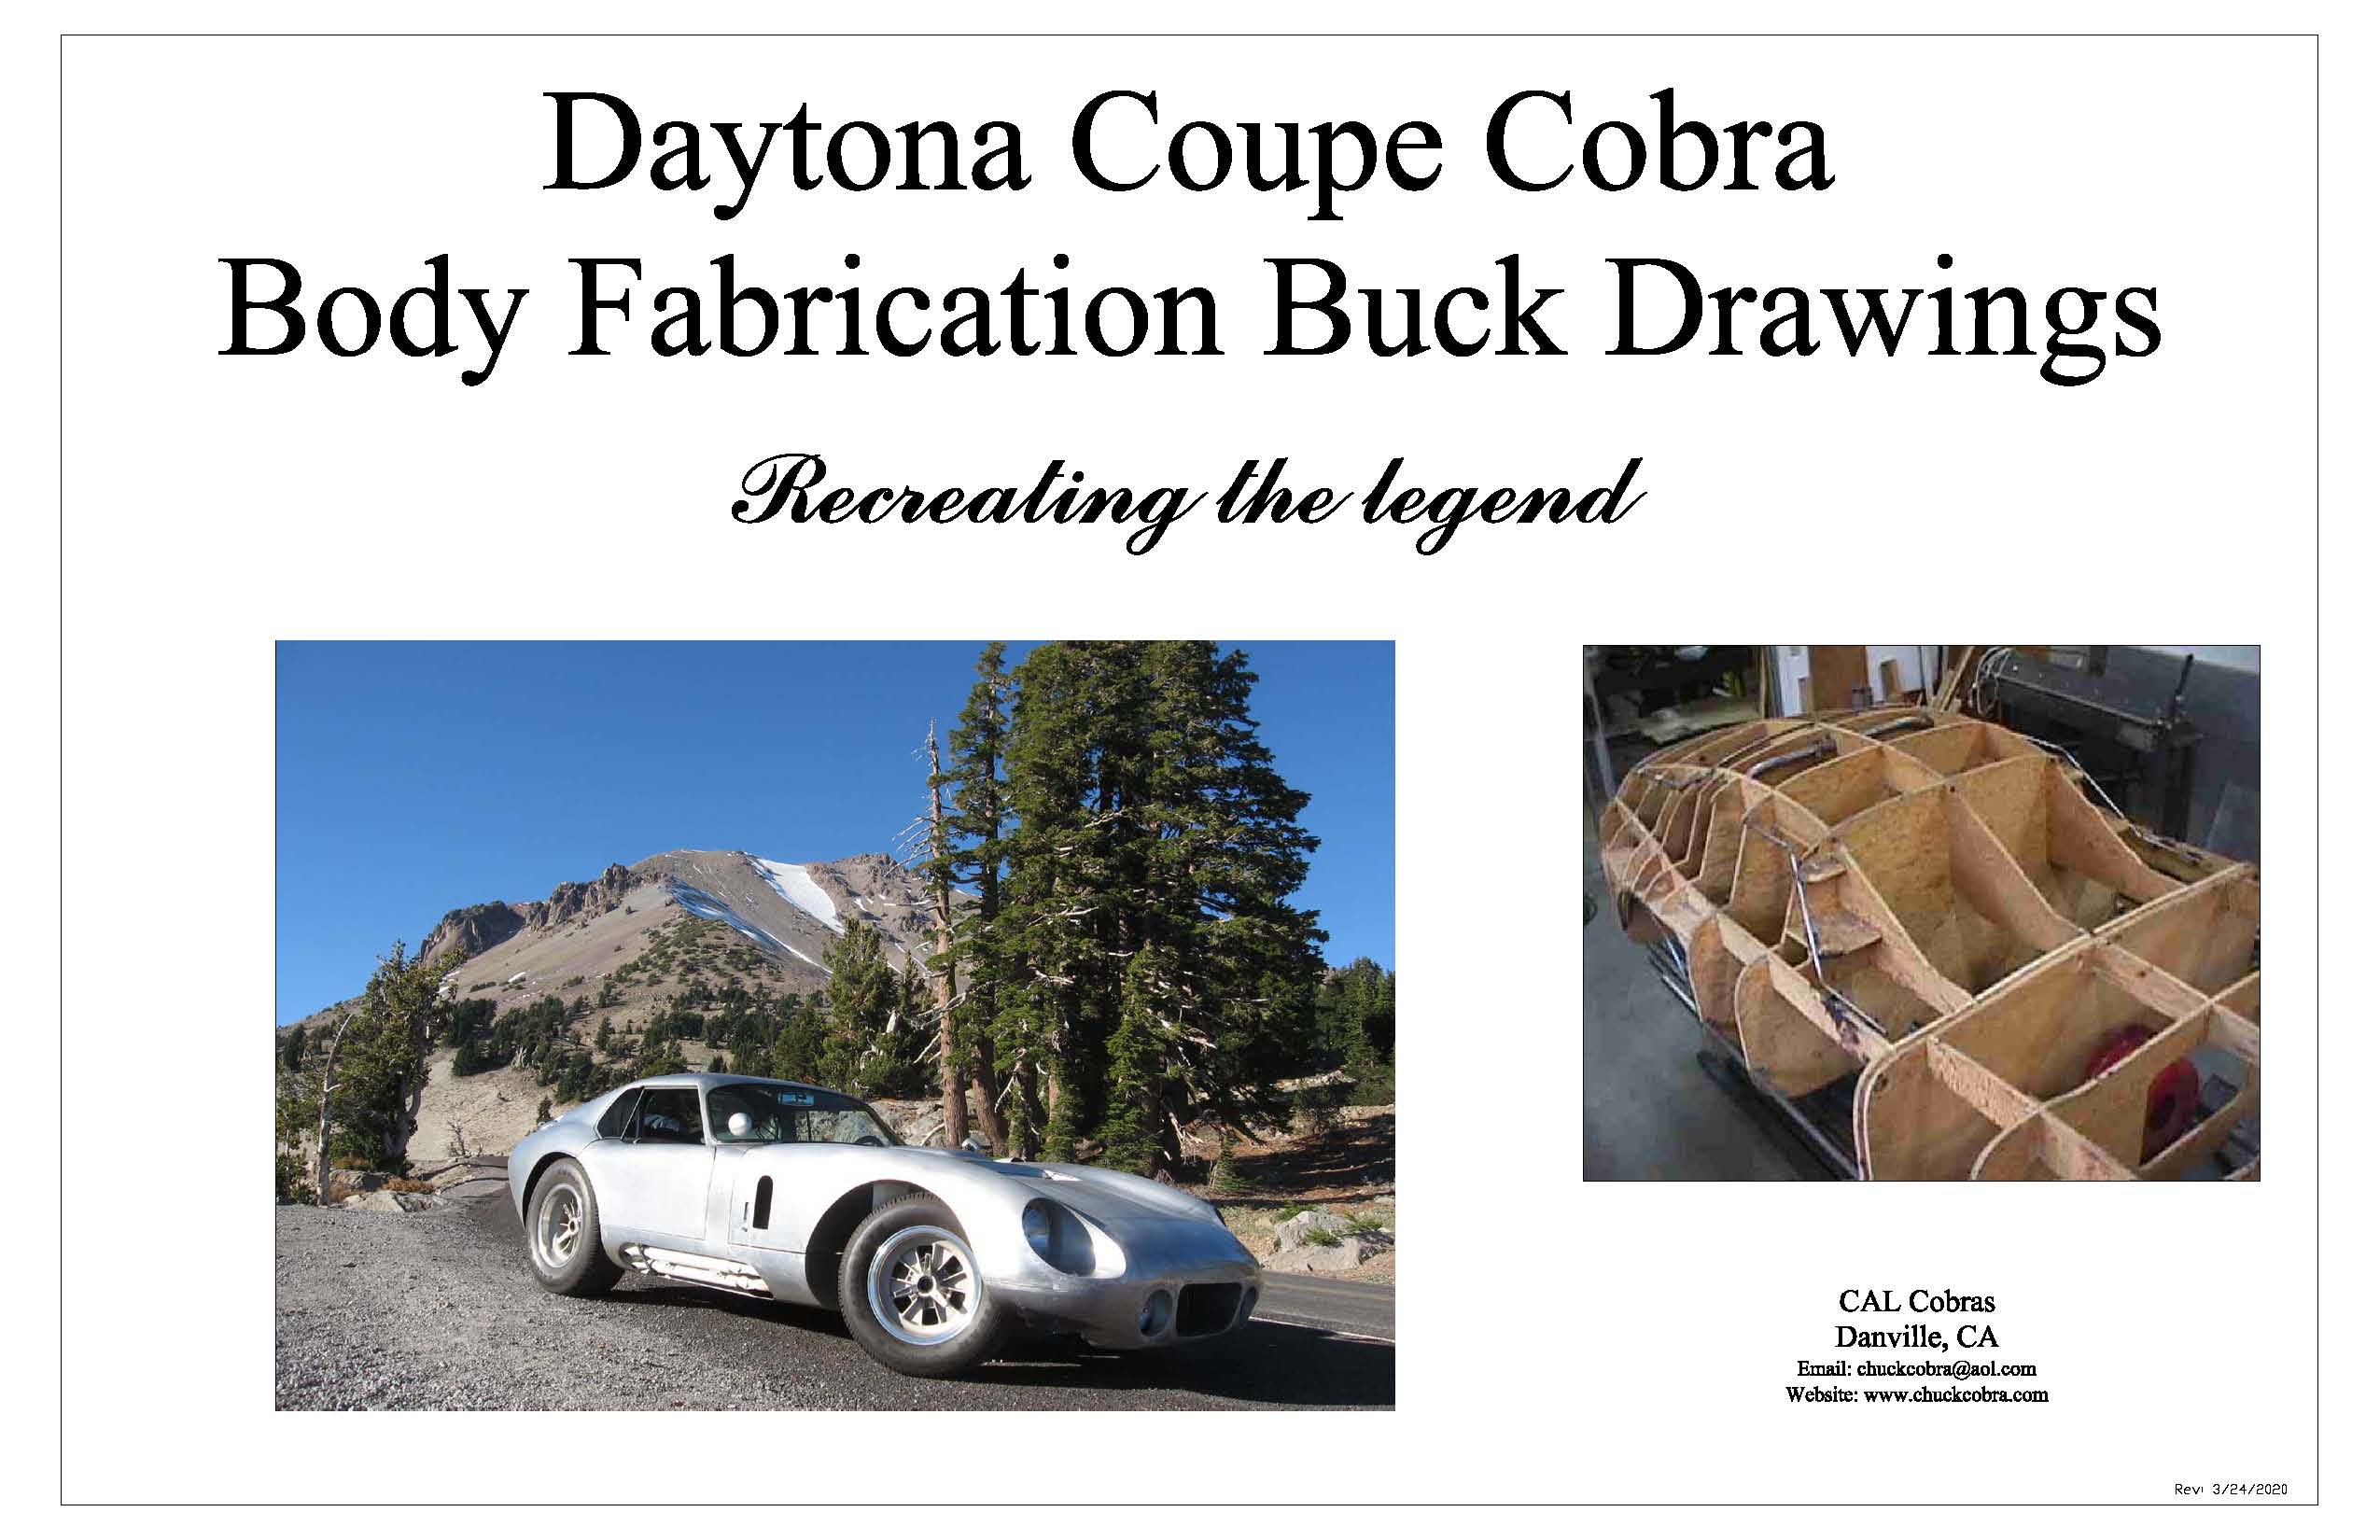 Daytona coupe cobra buck drawings